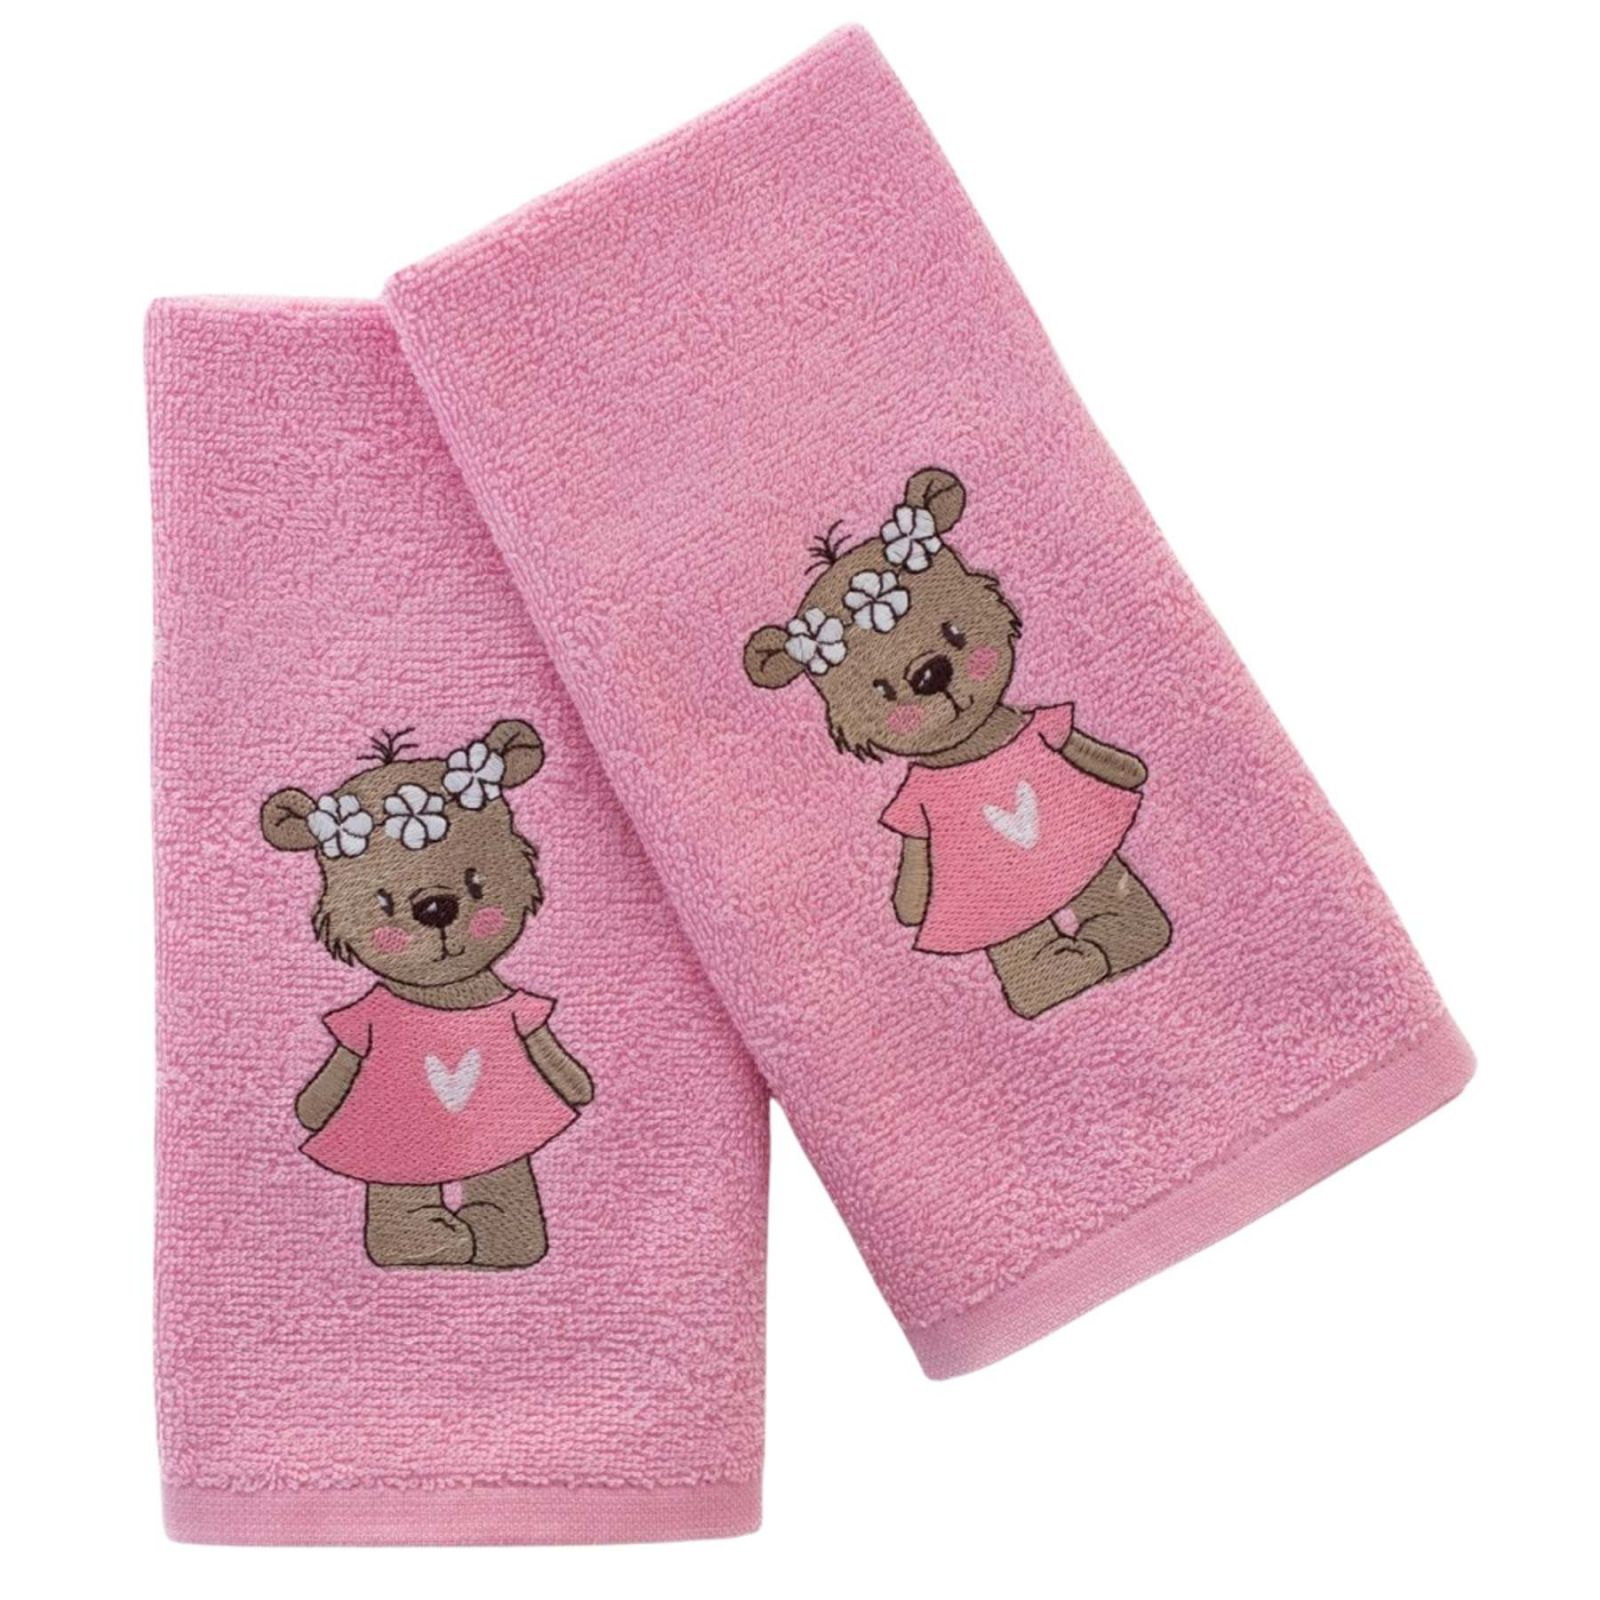 Praktik Dětský ručník LILI růžový 30x50 cm